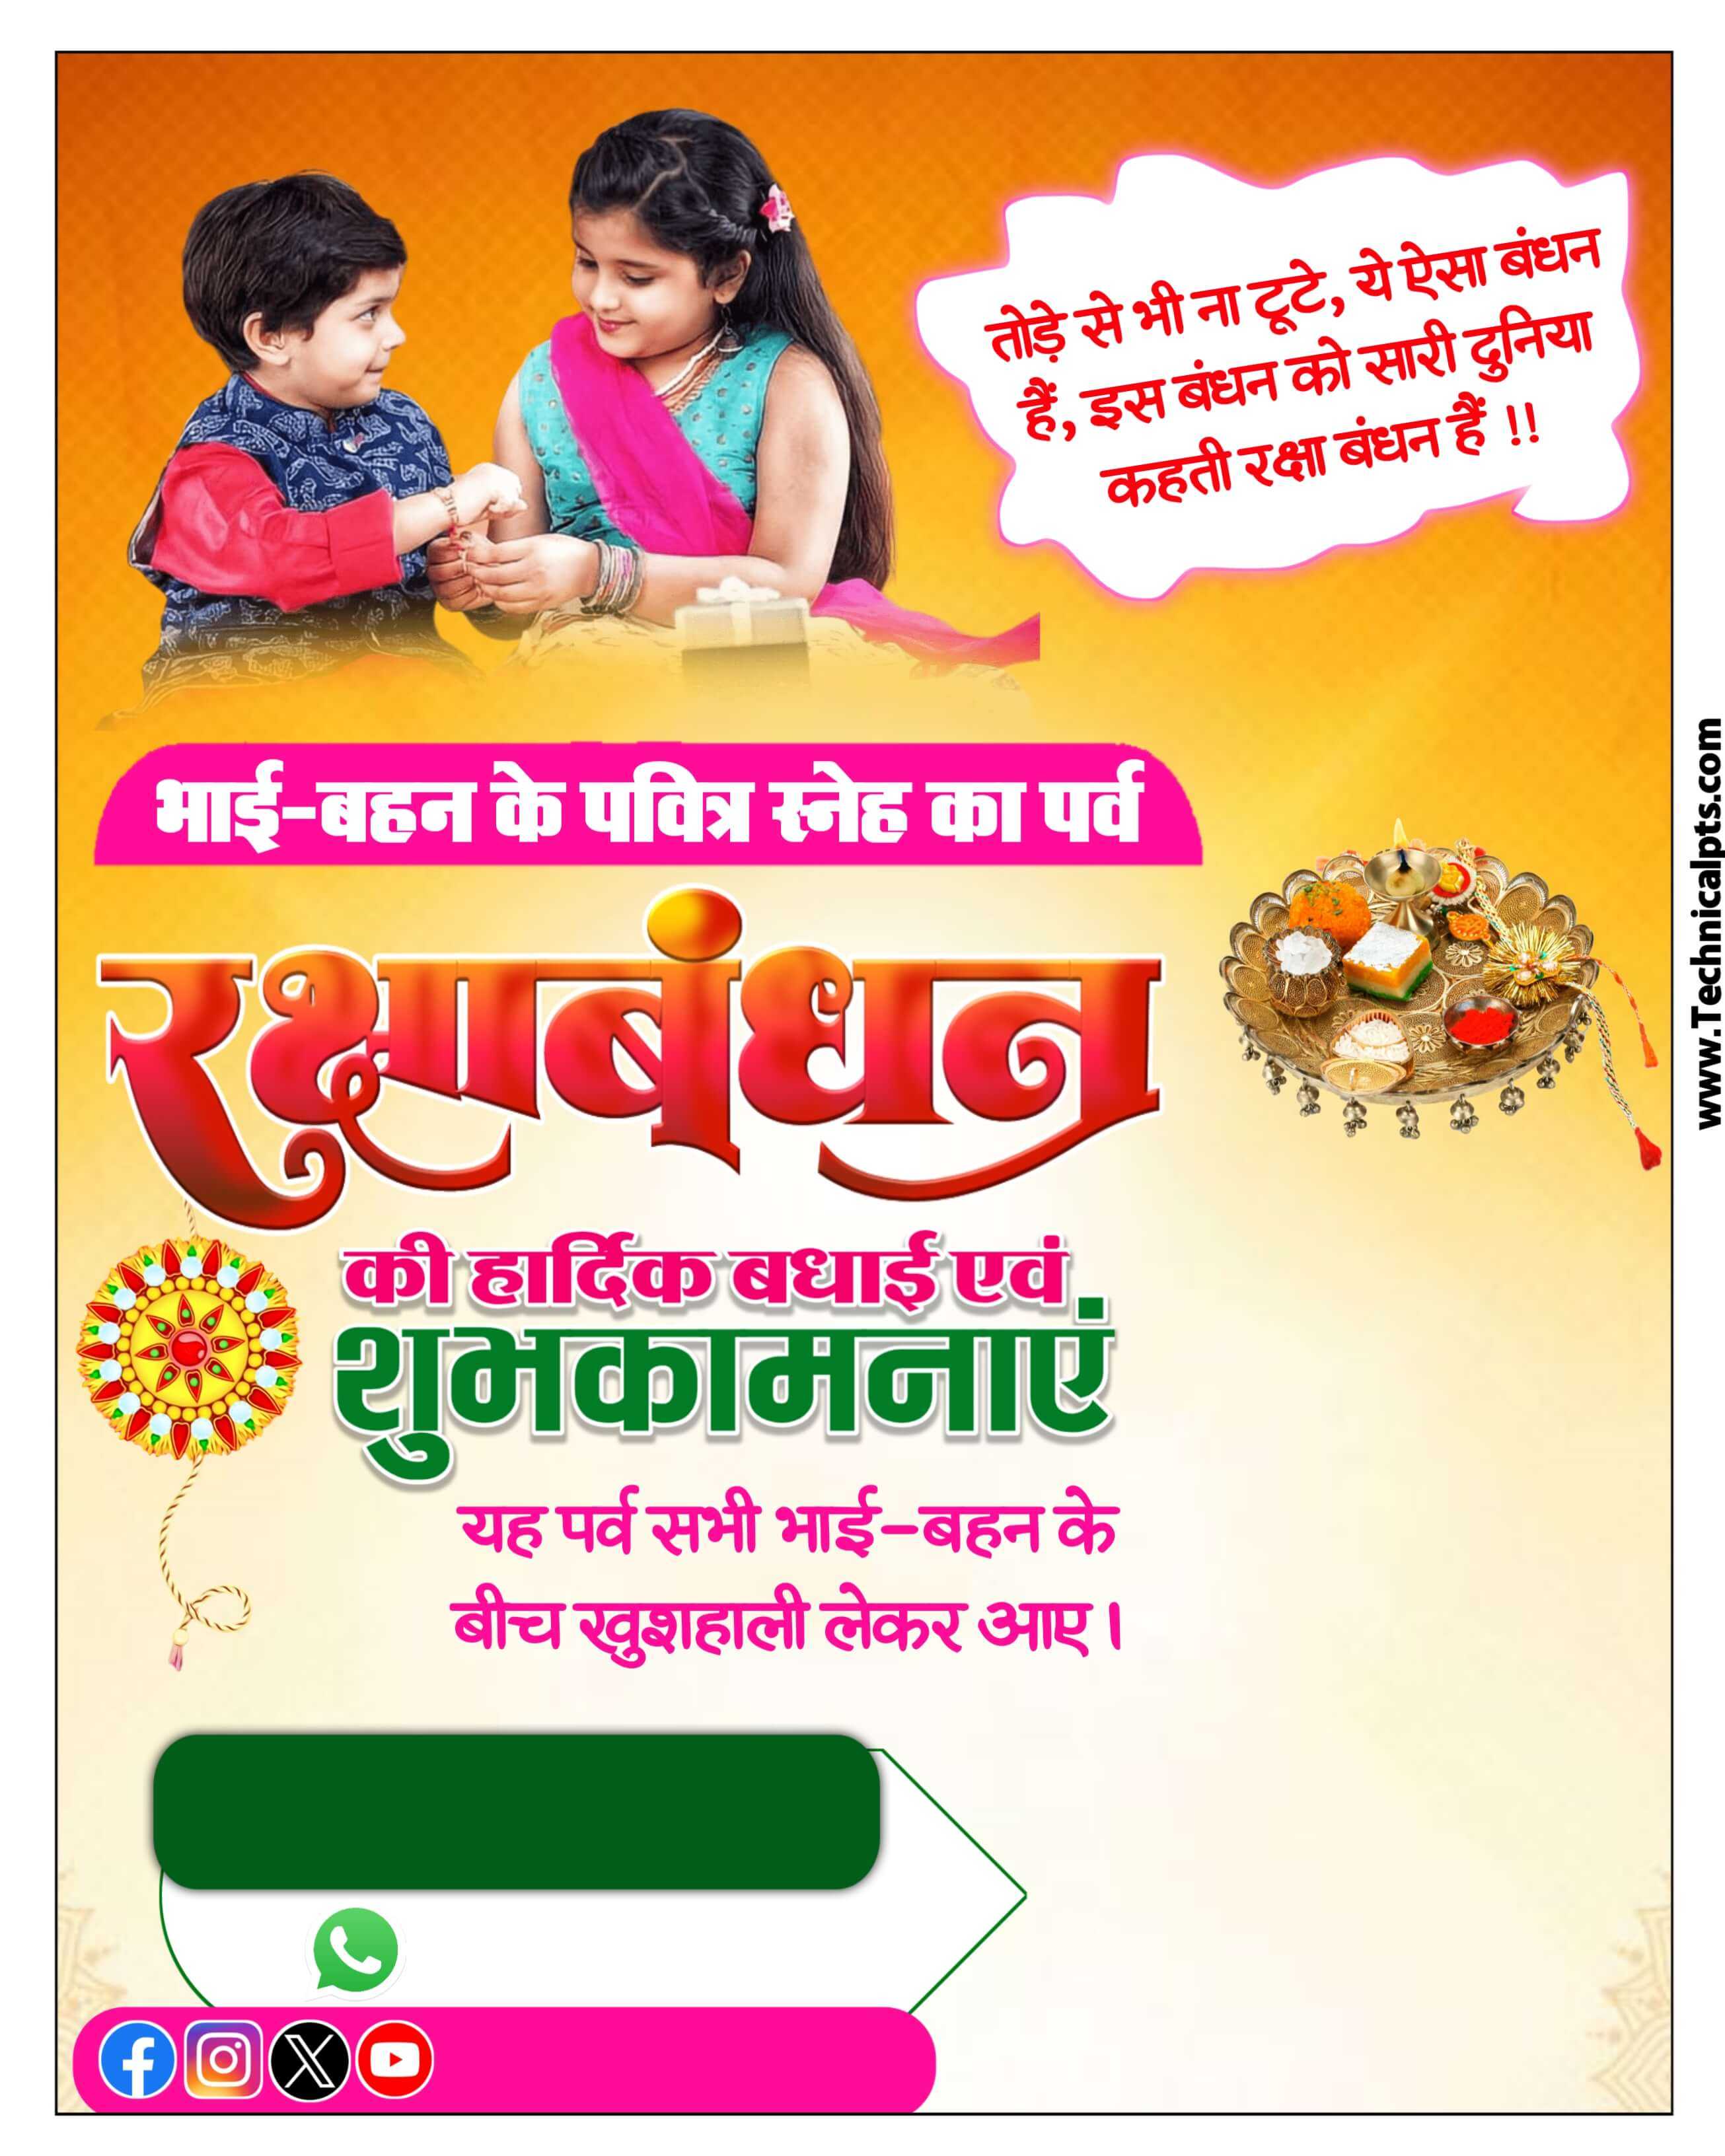 Rakshabandh plp file download | Mobile se Raksha Bandhan banner Kaise banaye| happy rakshabandh poster in hindi